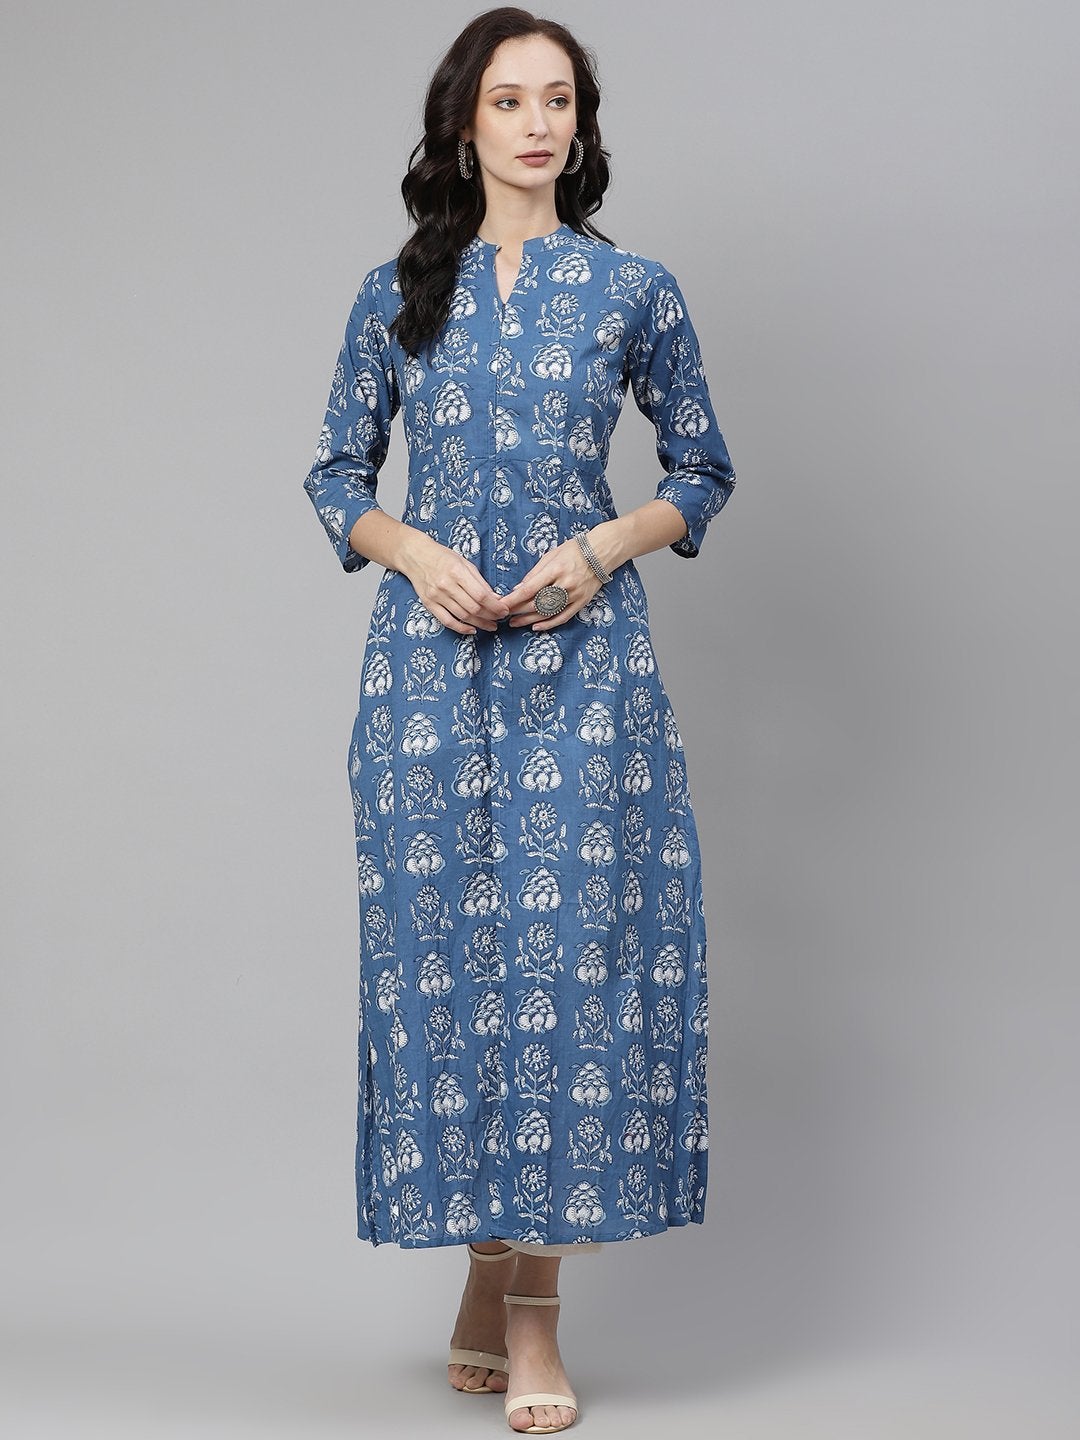 Women's Blue Cotton shrug style kurta - Divena